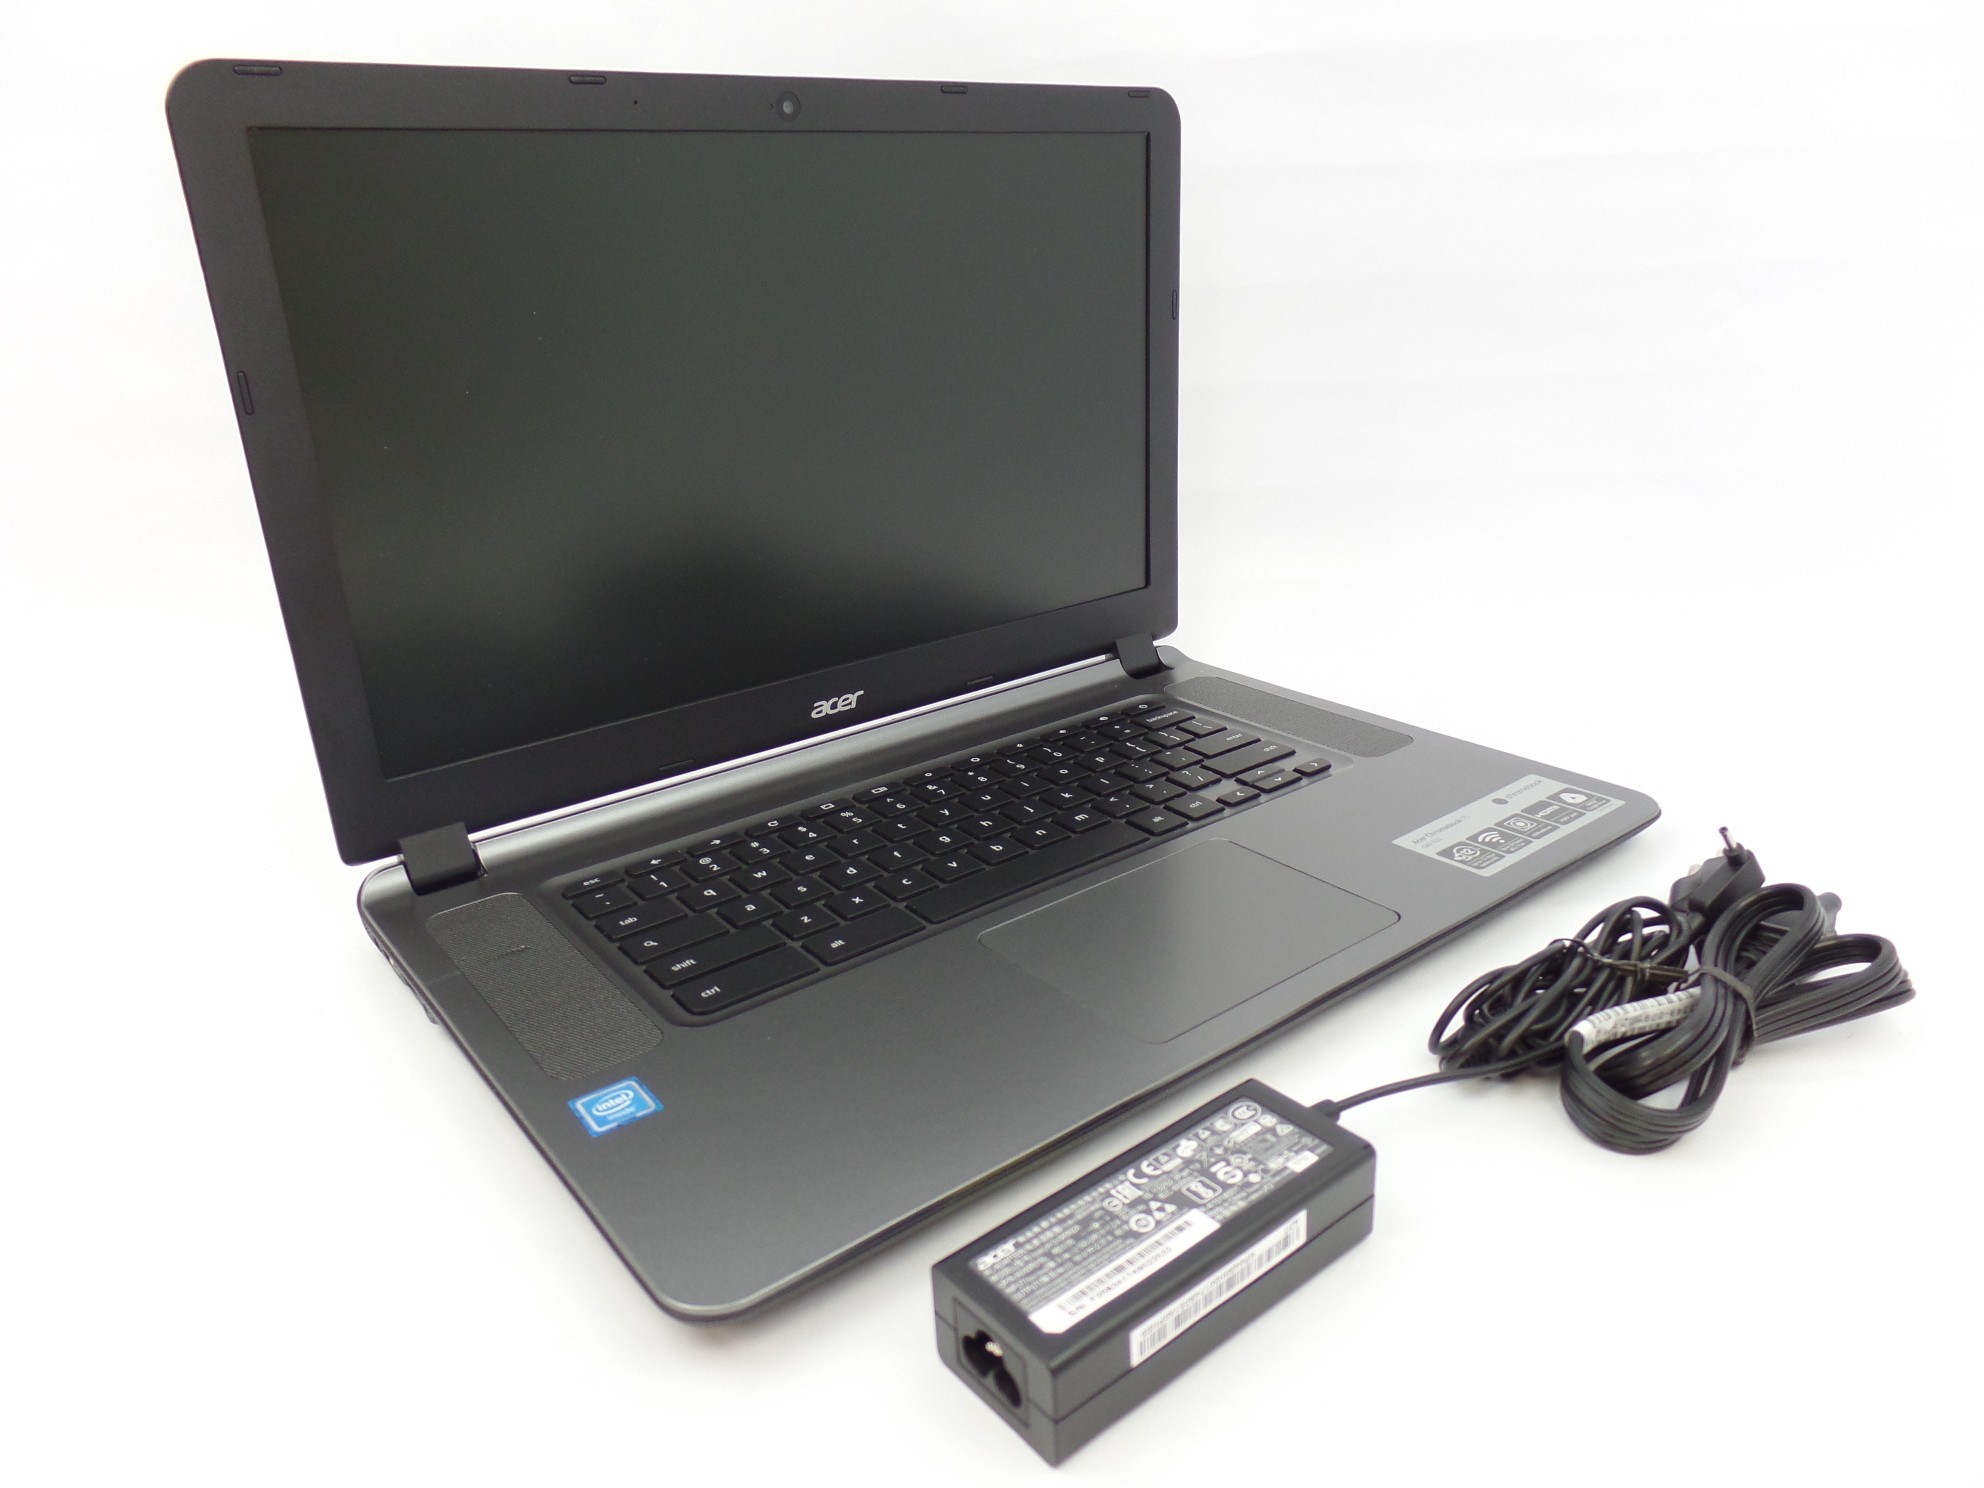 Acer Chromebook CB3-532-C47C 15.6" HD Intel N3060 1.6GHz 2GB 16GB Chrome U1